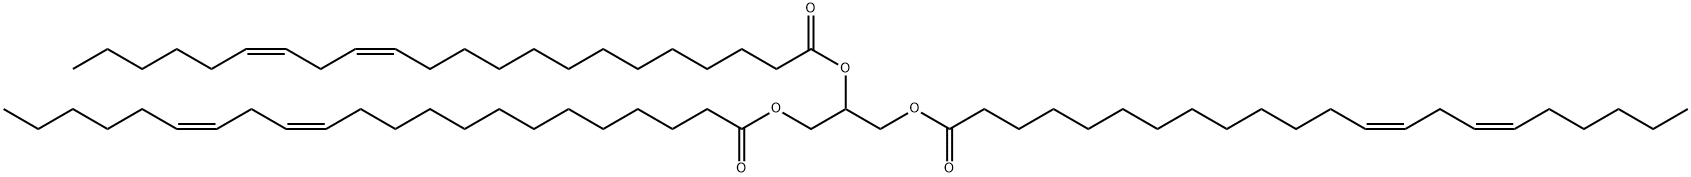 1,2,3-Tri-13(Z),16(Z)-Docosadienoyl-glycerol|1,2,3-Tri-13(Z),16(Z)-Docosadienoyl-glycerol